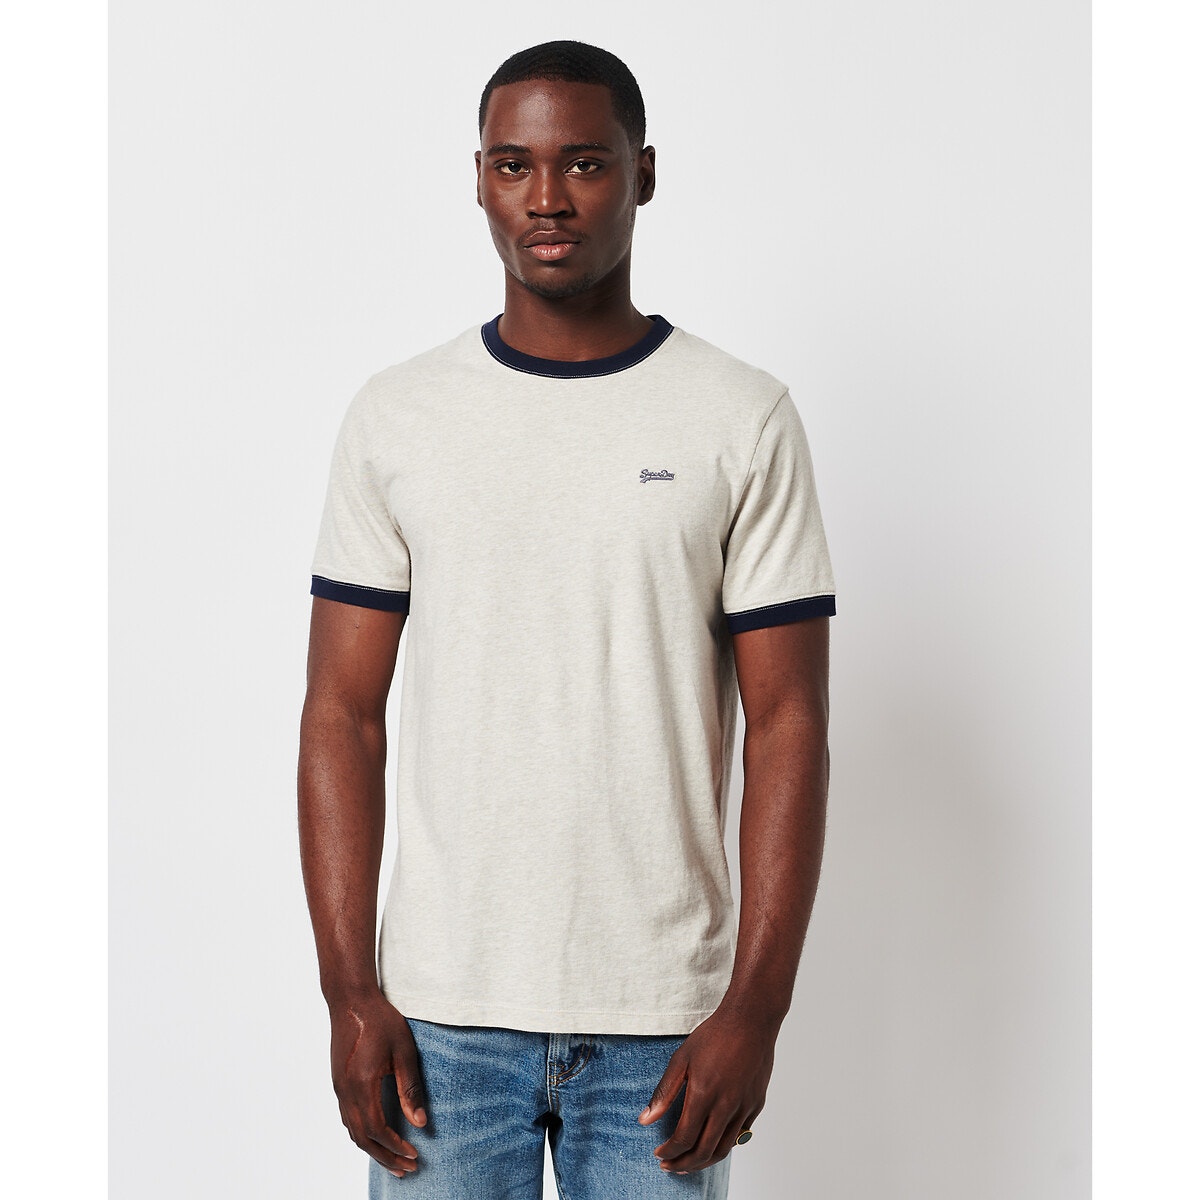 ΑΝΔΡΑΣ | Μπλούζες & Πουκάμισα | T-shirts Κοντομάνικο T-shirt, Vintage Ringer